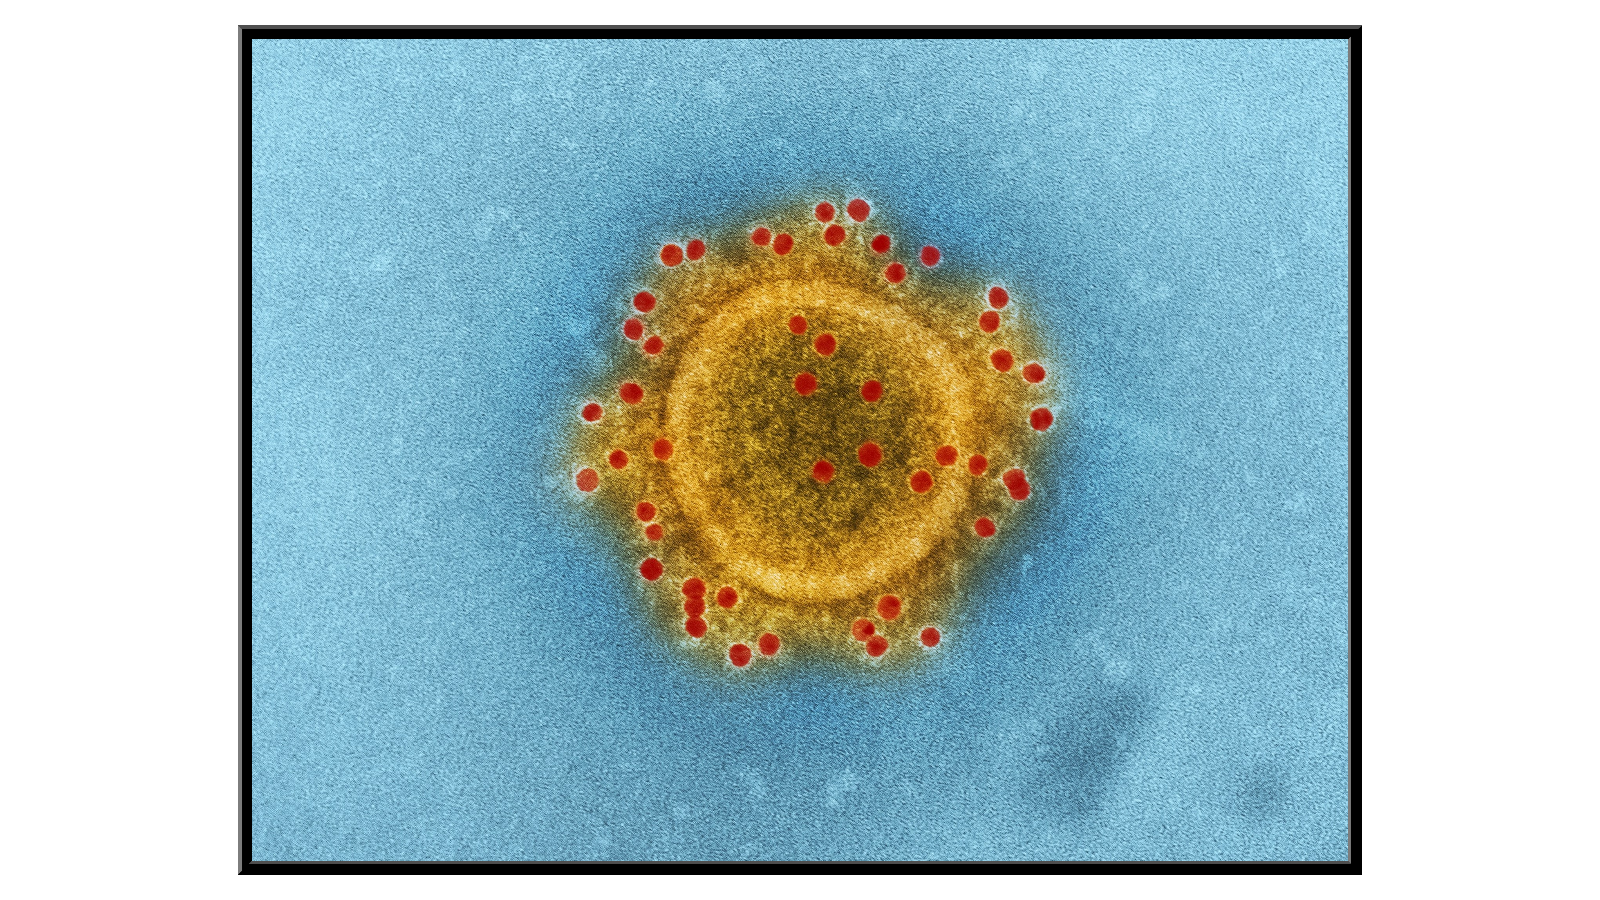 MERS-CoV virus